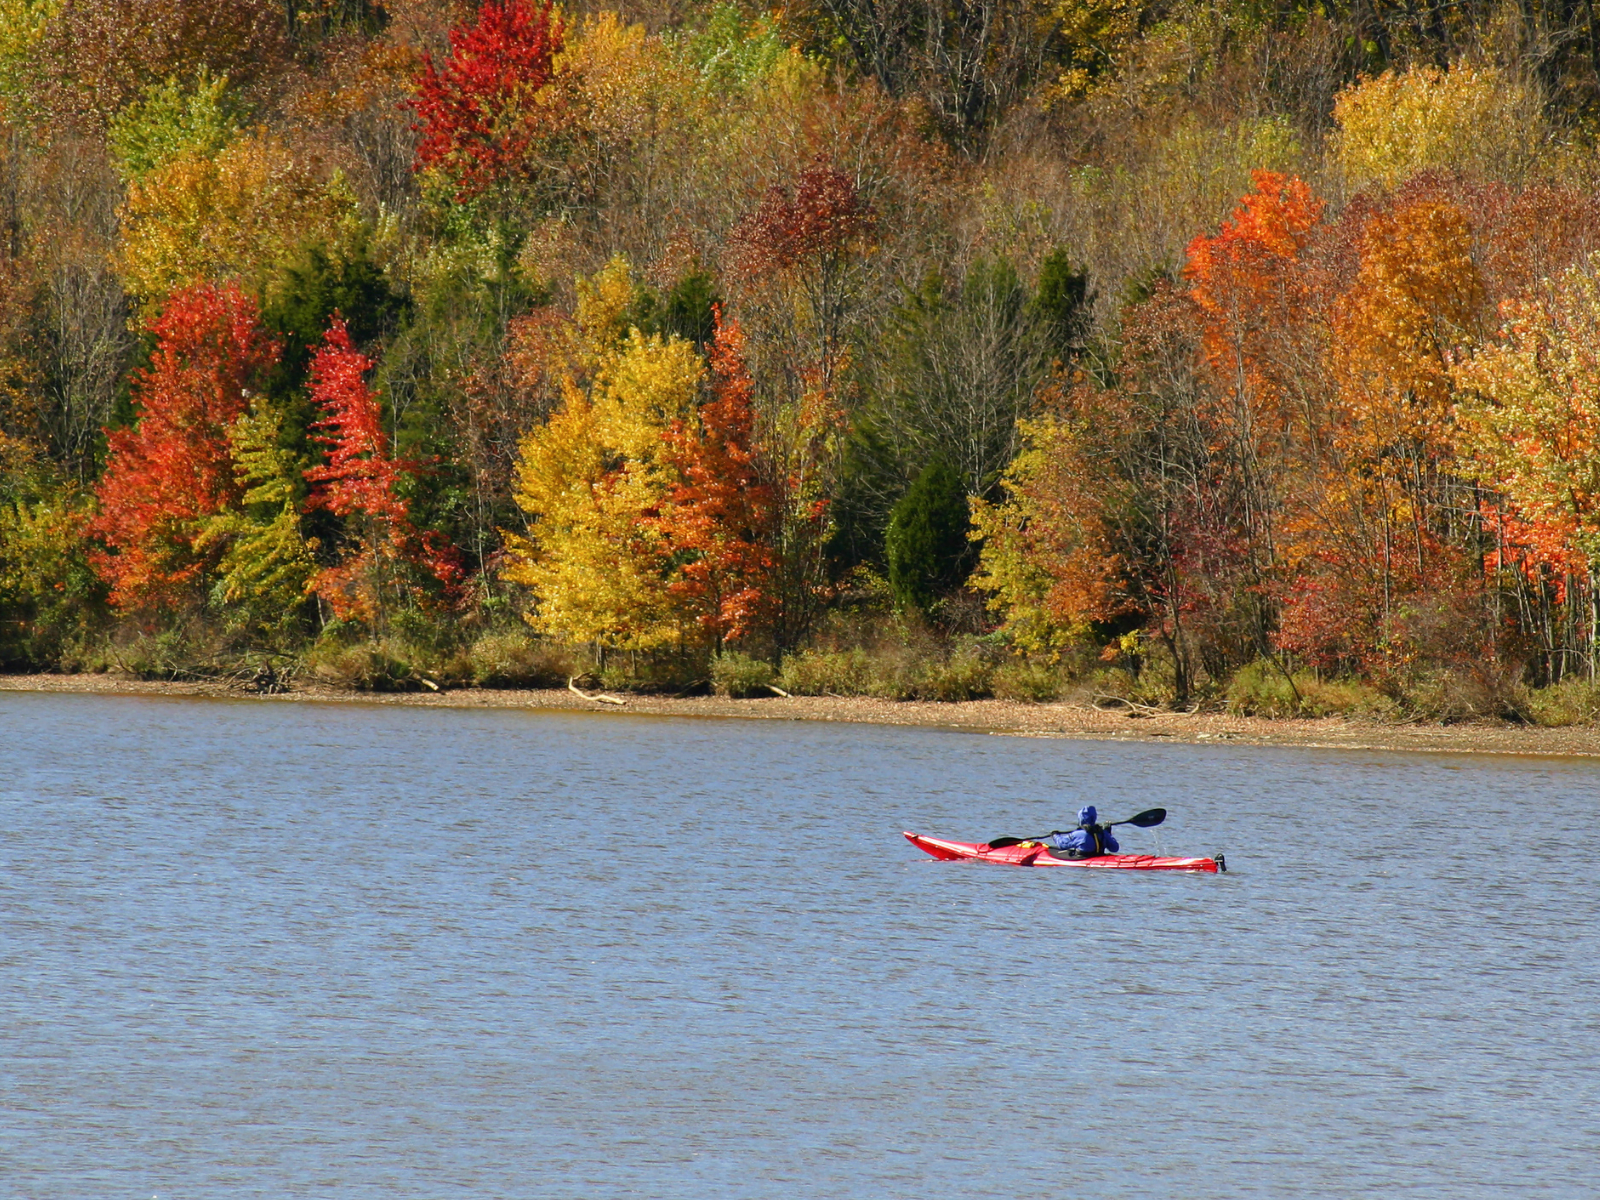 kayaking in the poconos